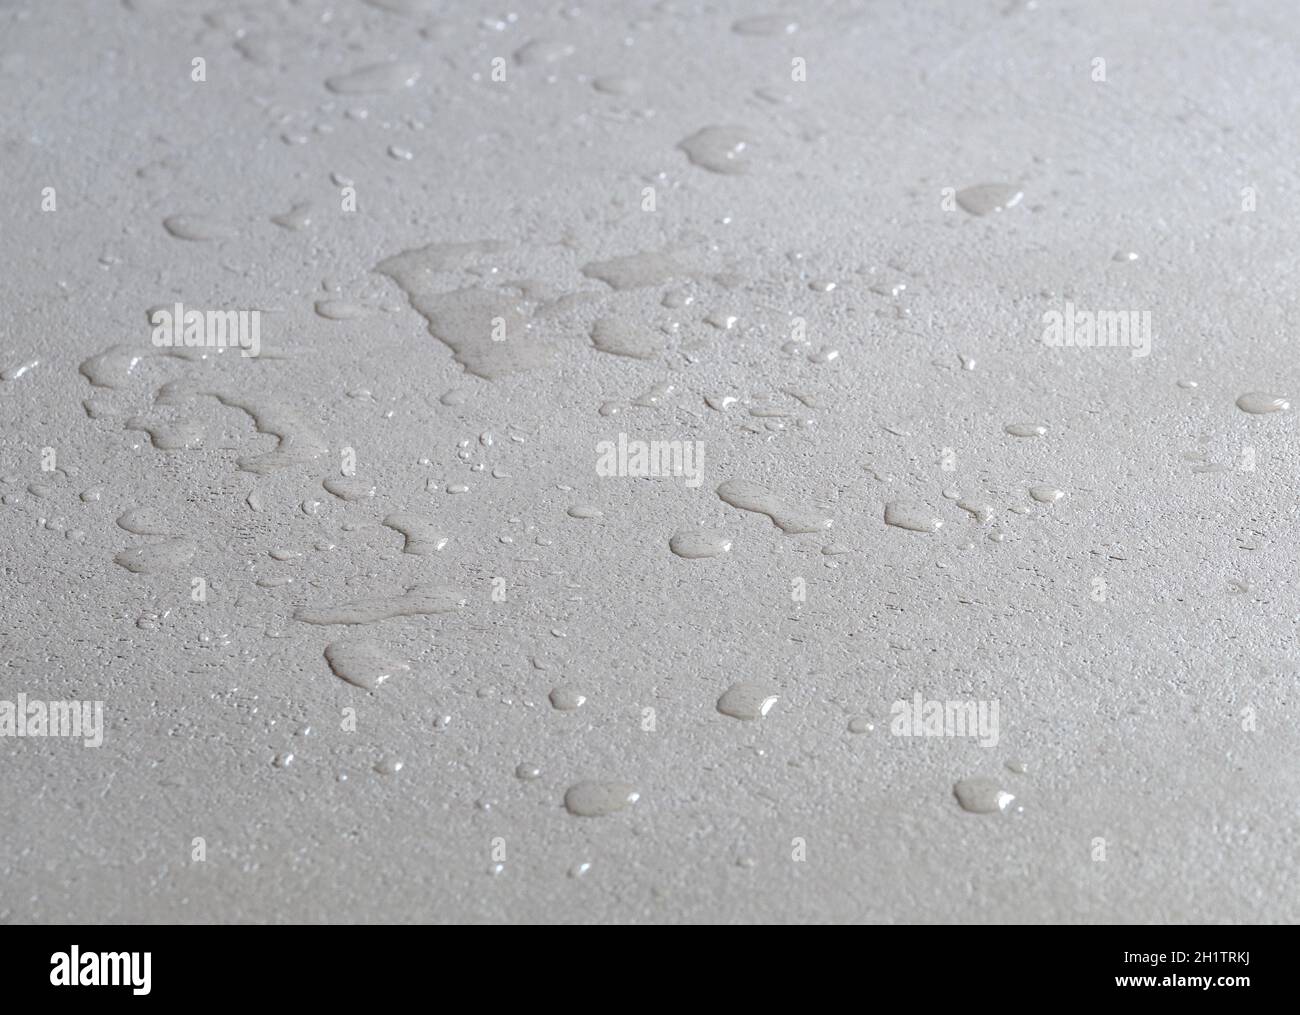 gouttes d'eau sur un sol en béton, surface en ciment imperméable et humide Banque D'Images